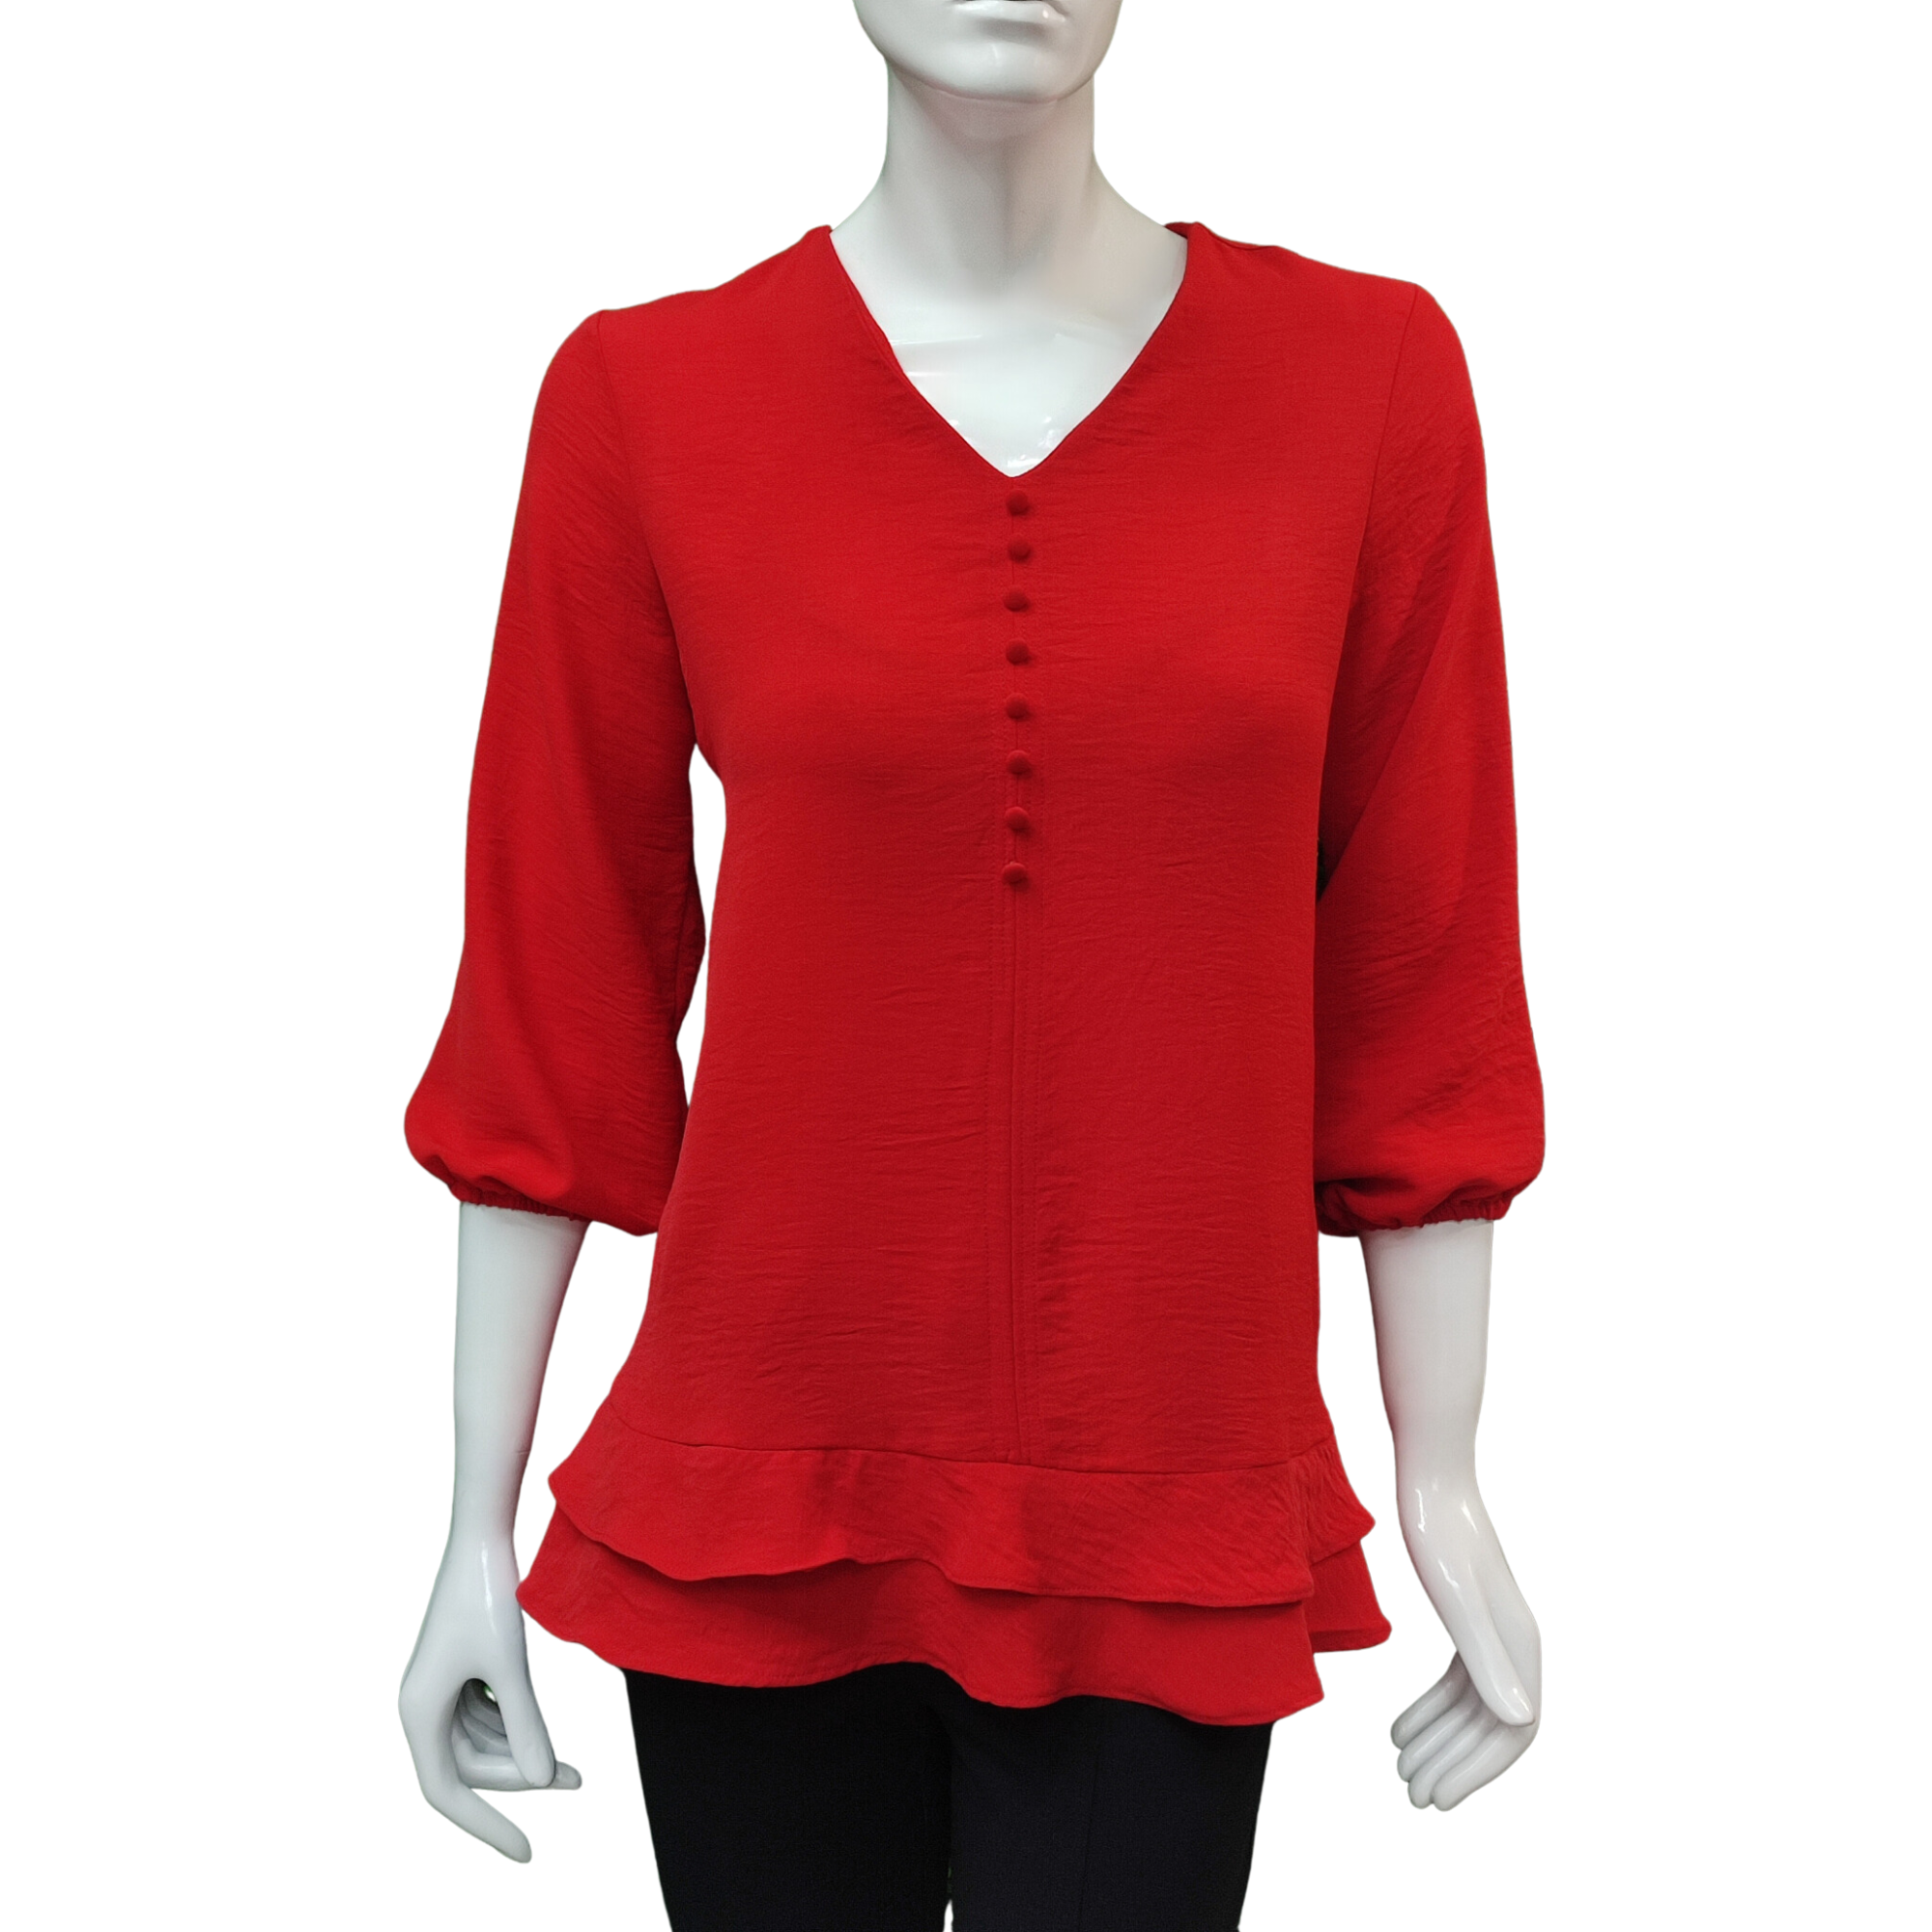 Blusa roja manga tres cuartos - Baronia